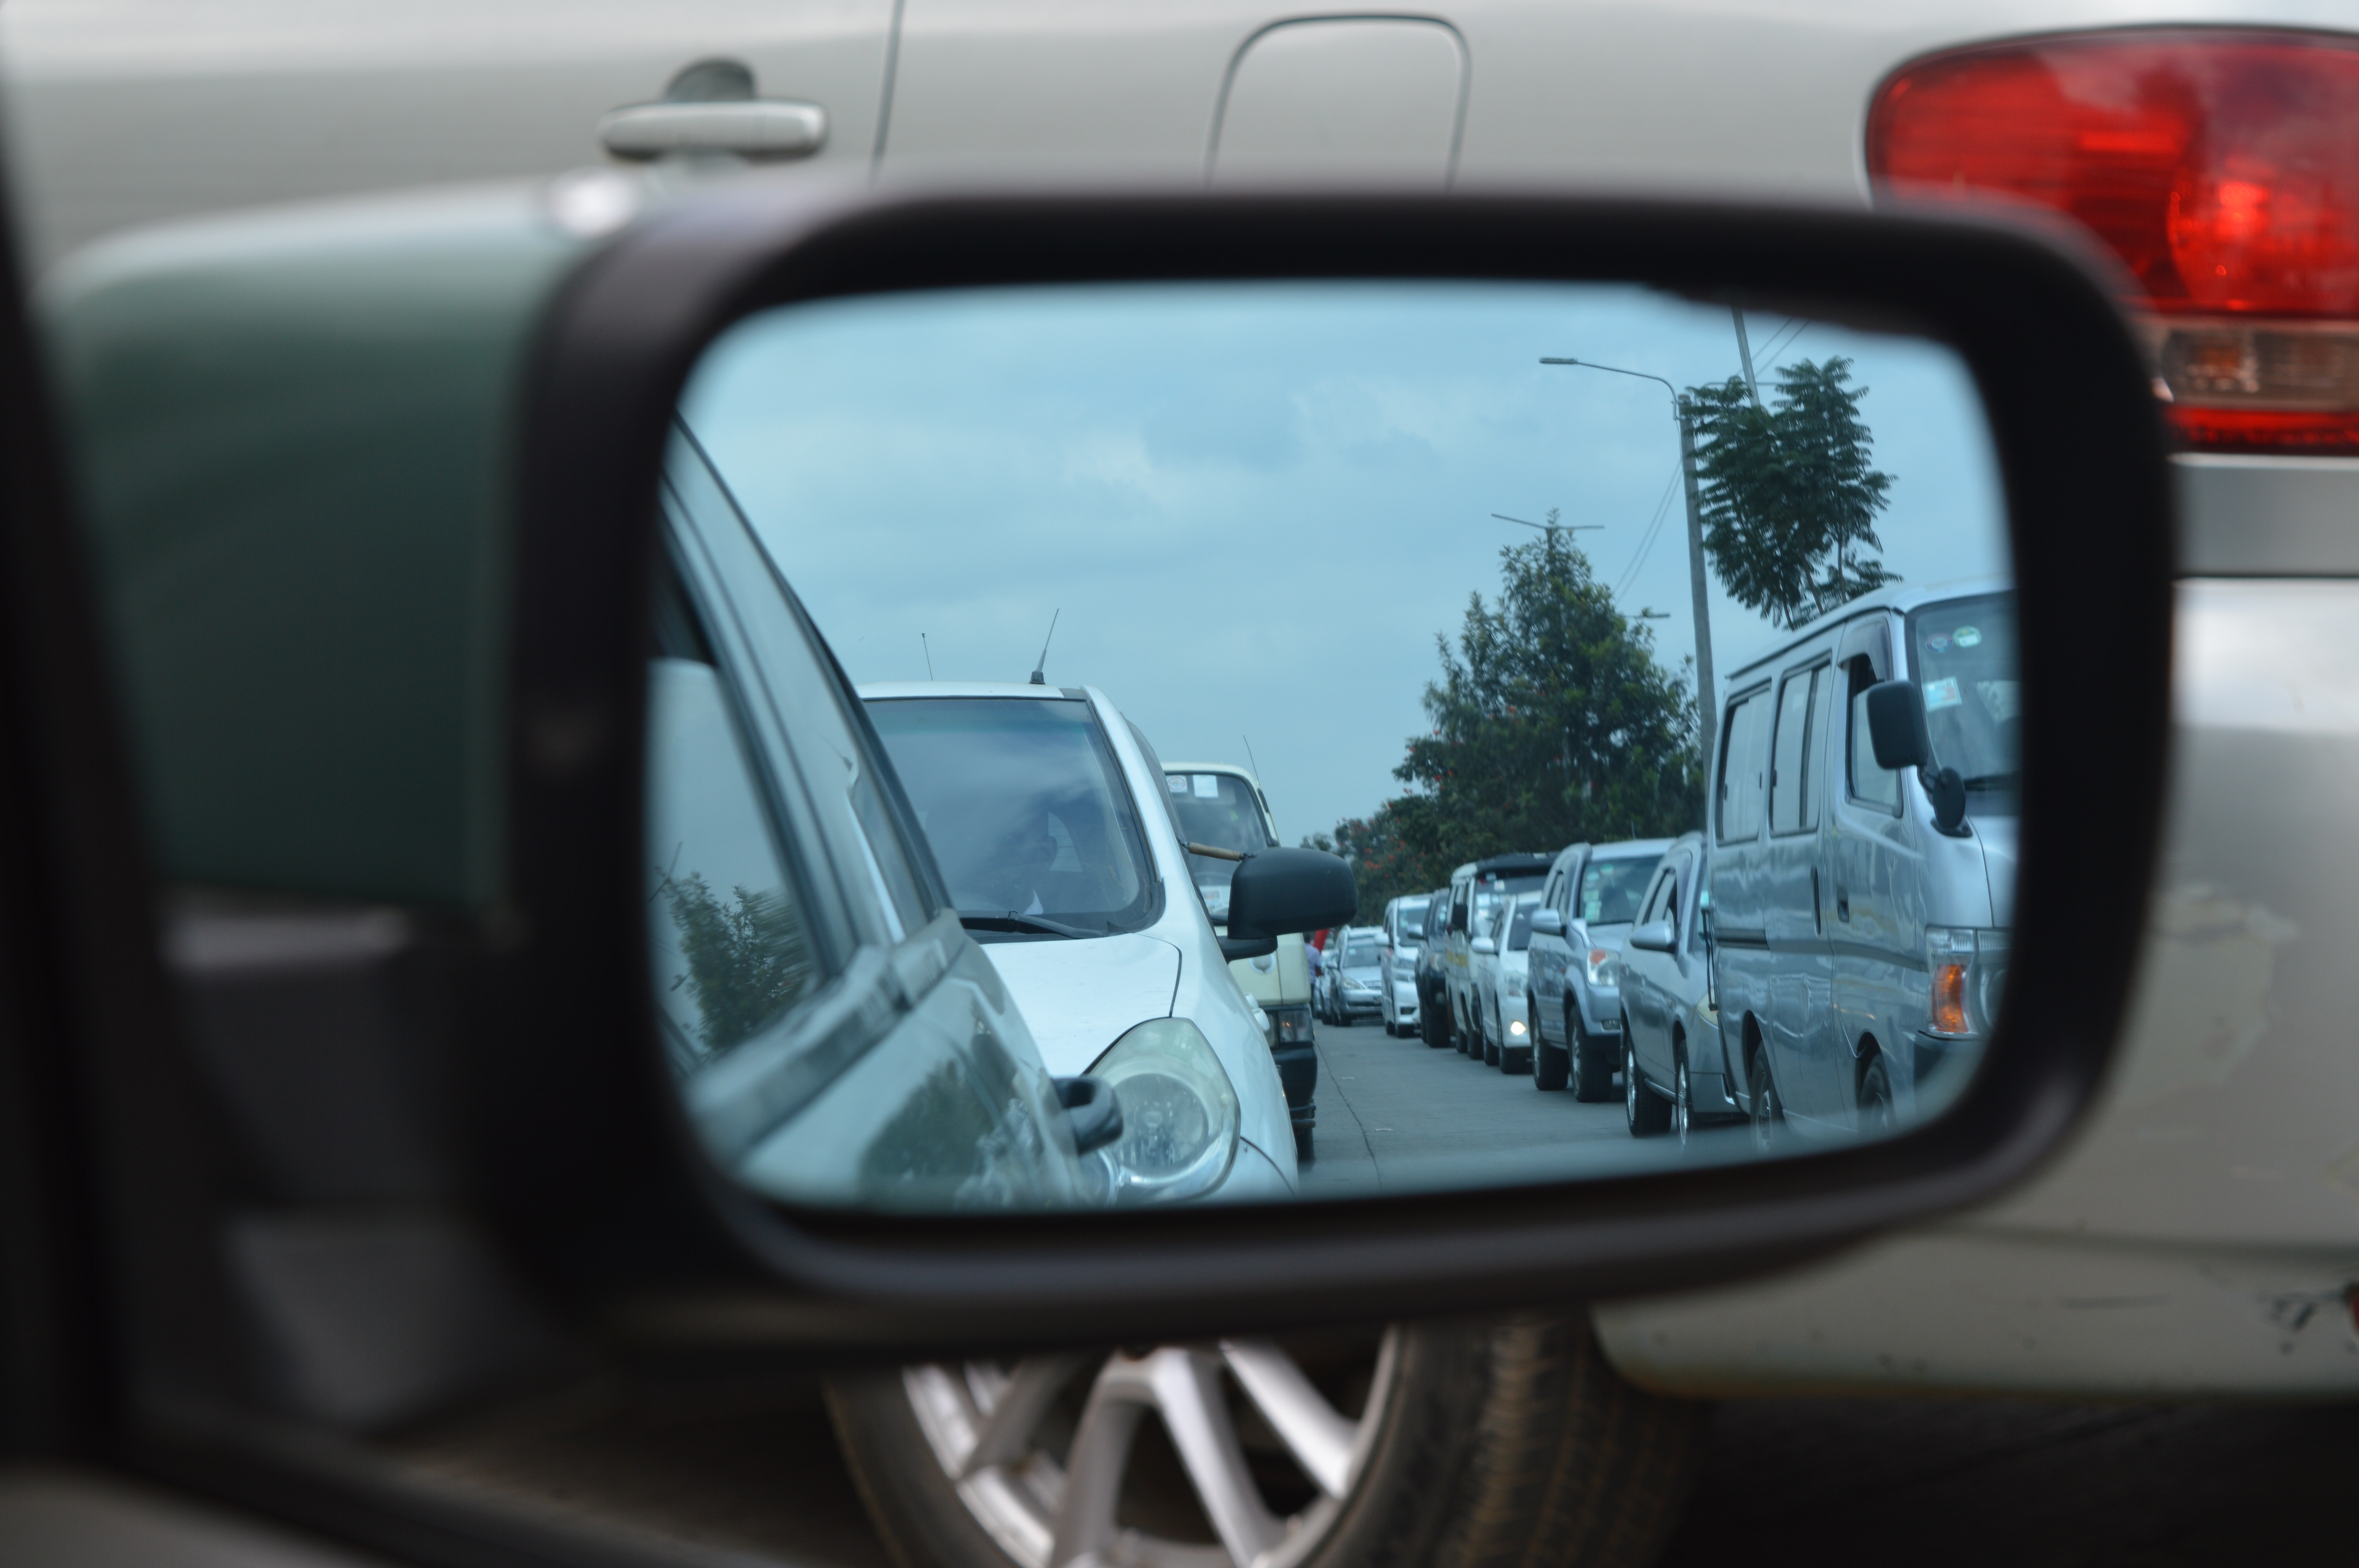 Imagem do reflexo de um retrovisor mostrando congestionamento de carros.